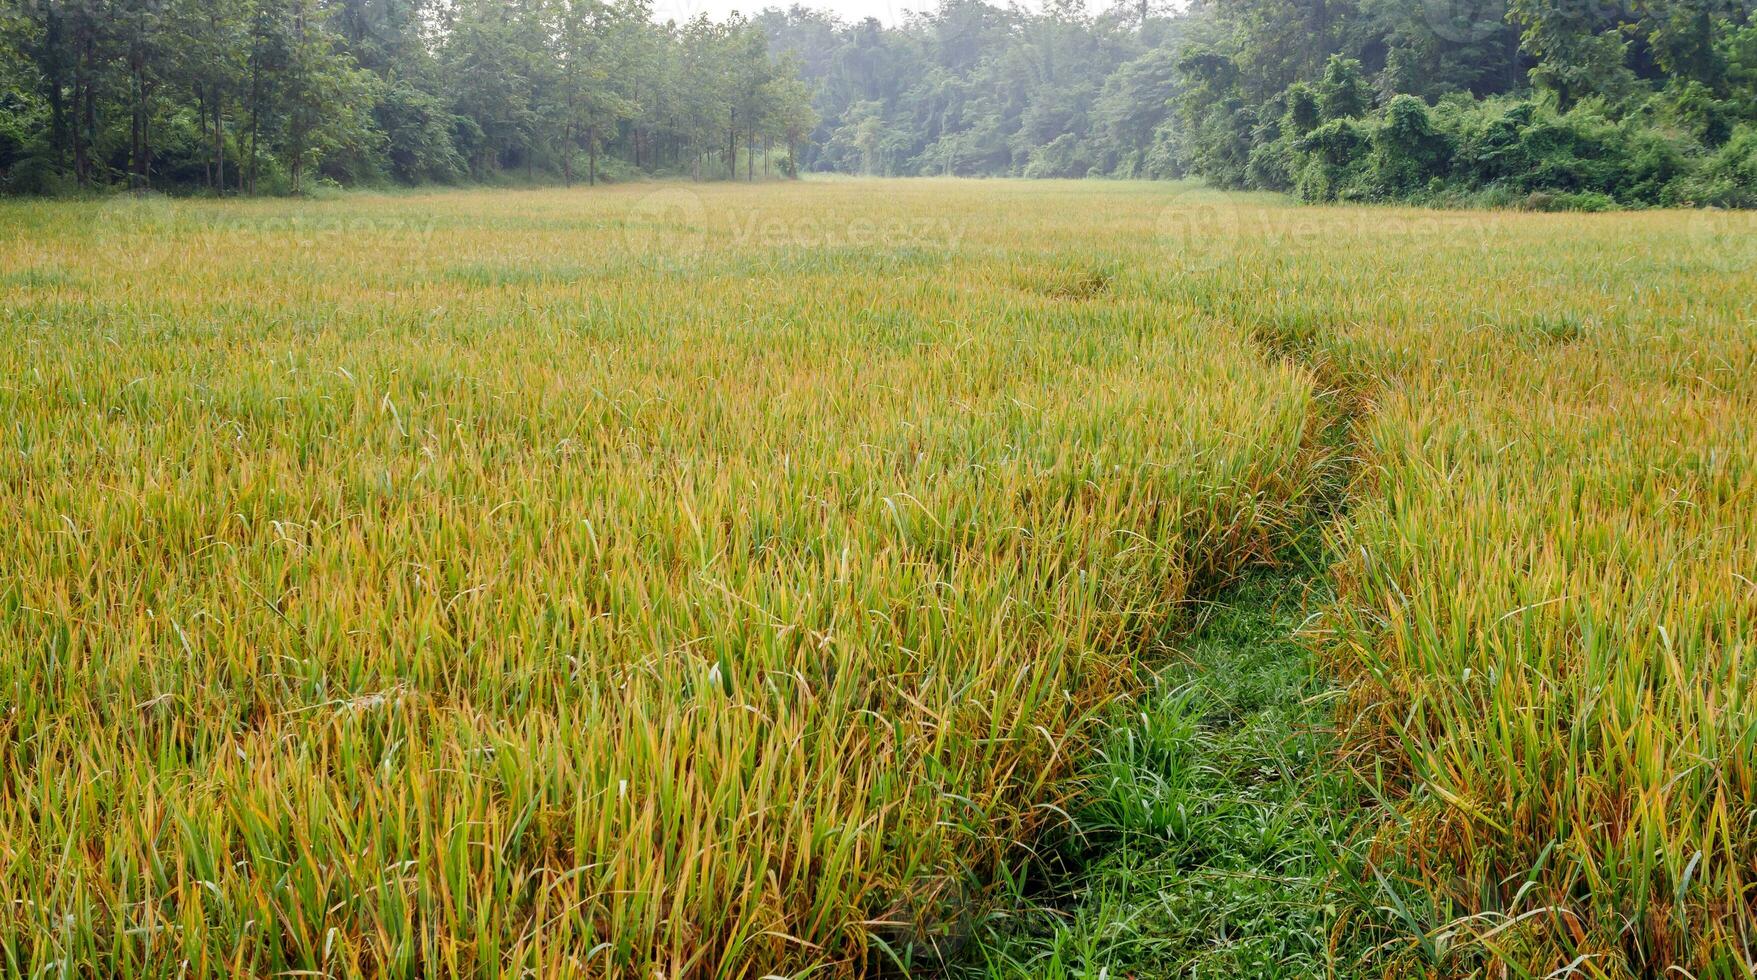 rijst- velden met rijst- granen in de buurt wezen geoogst met de nevel en zacht zonlicht in de ochtend.boerderij rijstveld en landbouw concept. foto